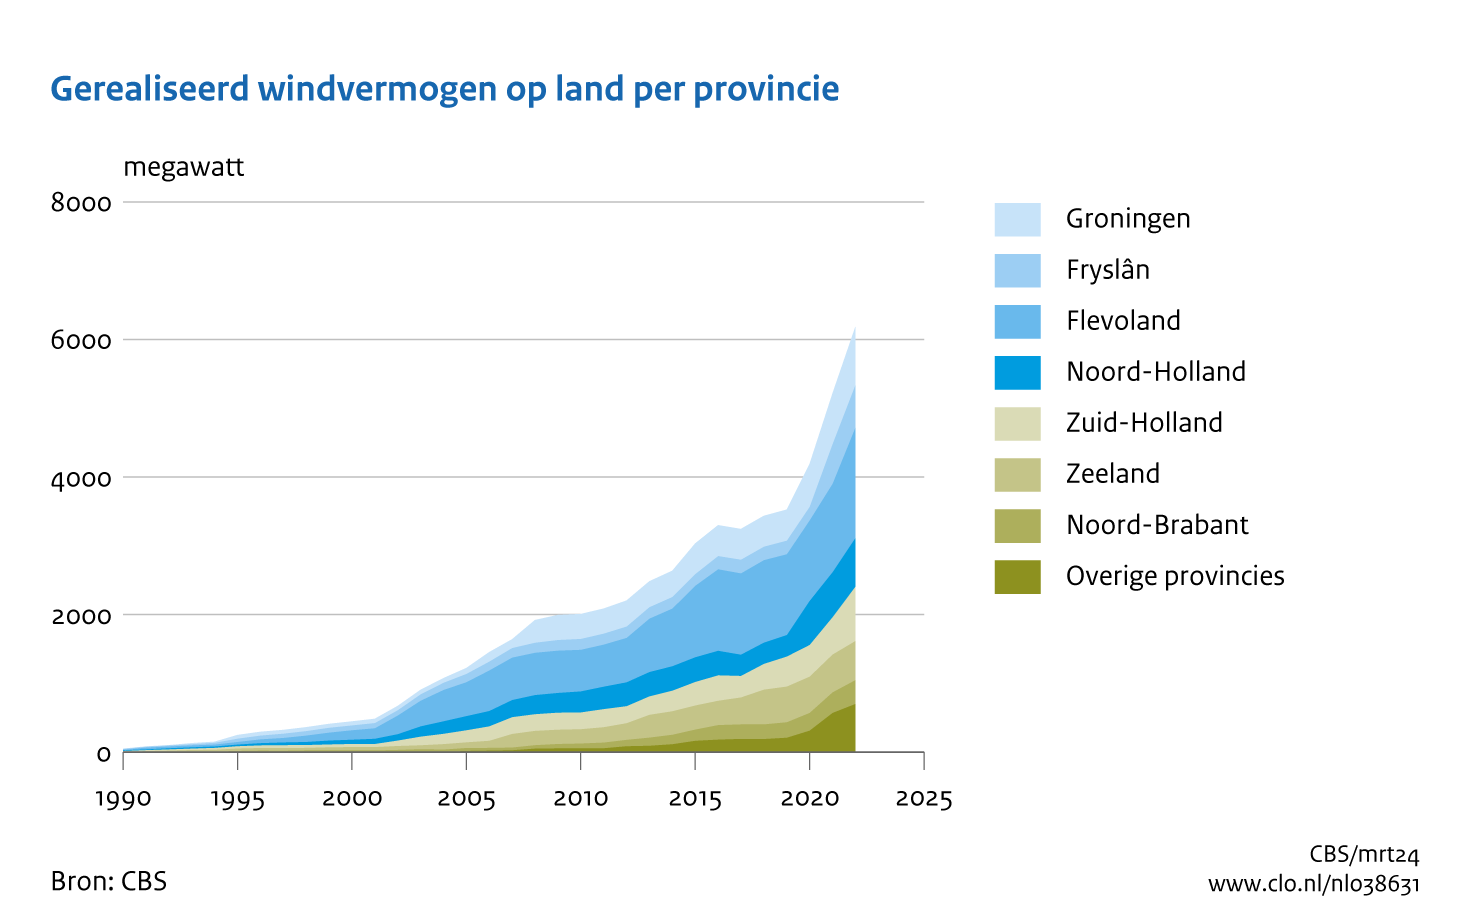 Vlakgrafiek met het opgesteld vermogen aan windenergie per provincie van 1990 tot en met 2022. Het vermogen is sterk toegenomen van 50 megawatt in 1990 tot 6185 megawatt in 2022. Het meeste windvermogen is opgesteld in Flevoland.